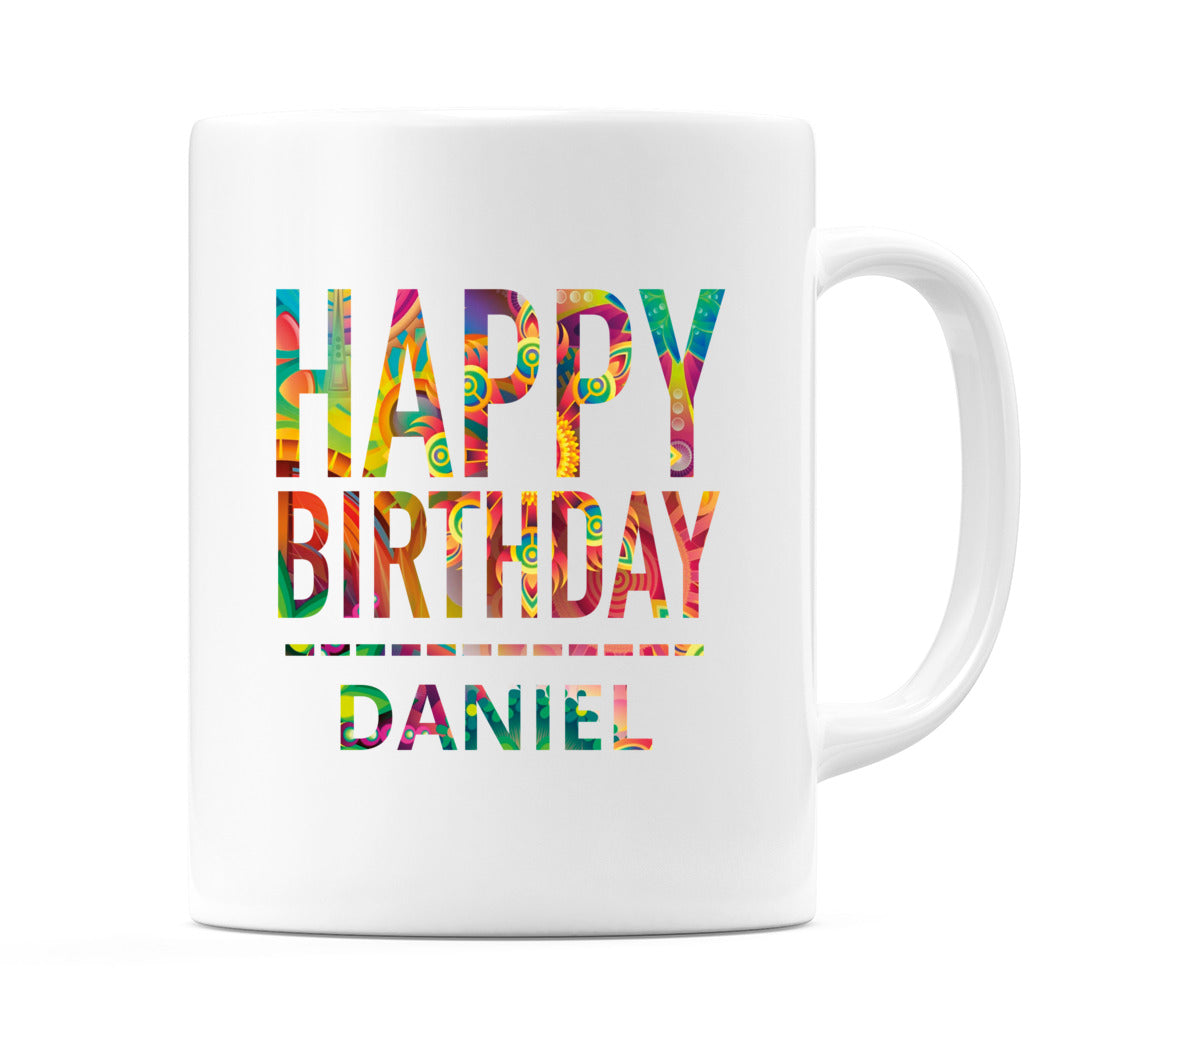 Happy Birthday Daniel (Tie Dye Effect) Mug Cup by WeDoMugs